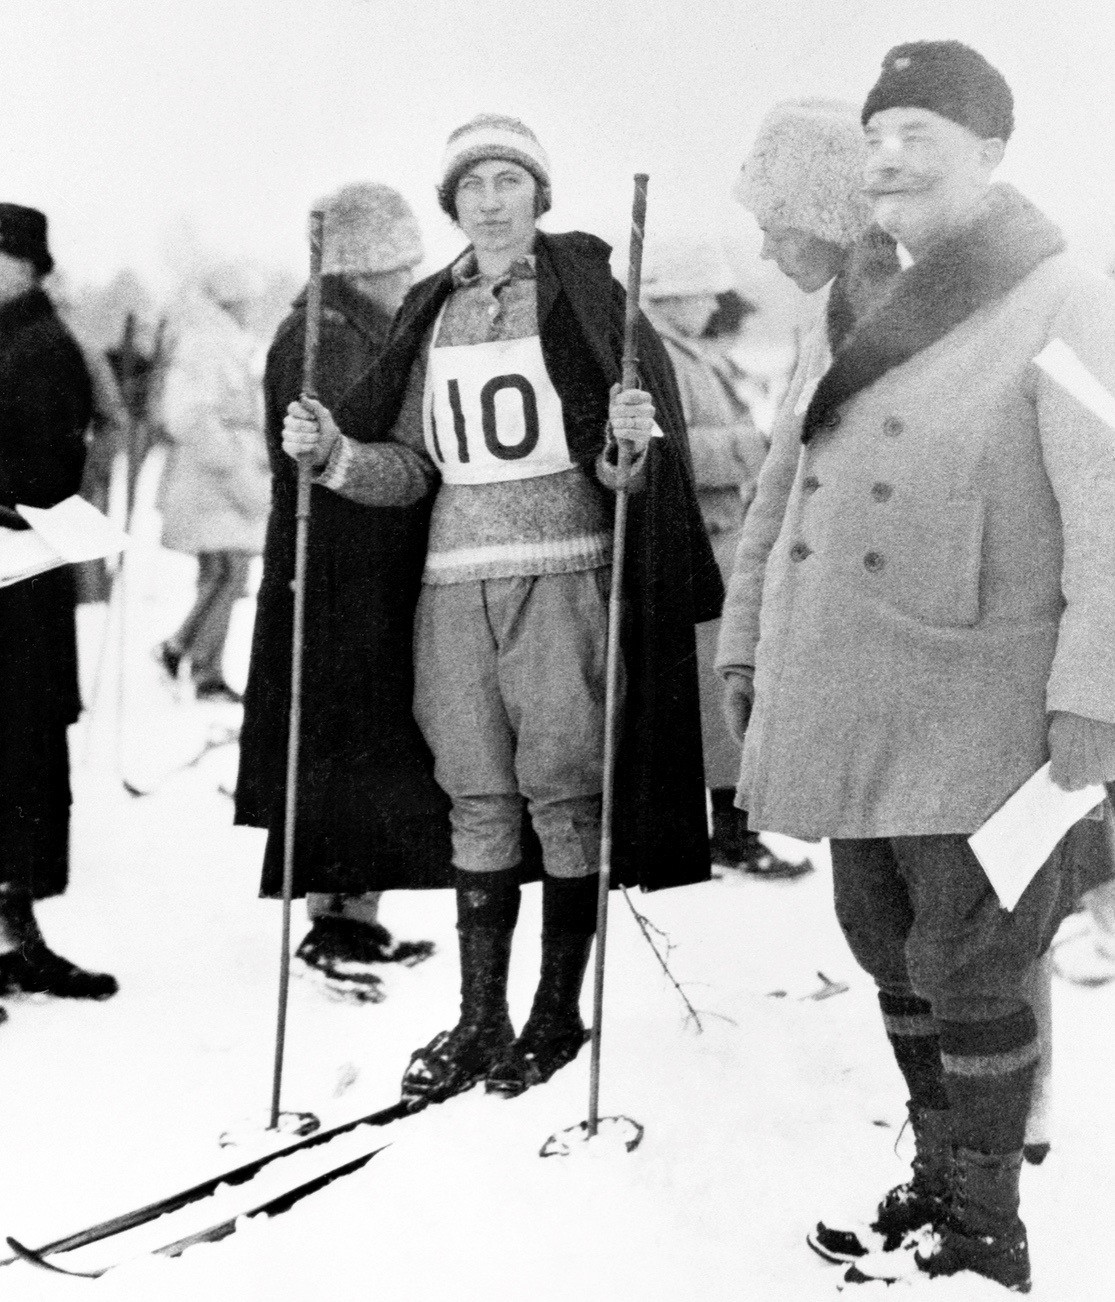 Agnes Lindberg från Norsjö bröt mot normen när hon vägrade långkjol och istället åkte i långbyxor. Det ansågs opassande. Samma dag som brodern Oskar Lindberg vann Vasaloppet – den 4 mars 1923 - vann blev Agnes svensk mästarinna på 10 km. Efter Agnes pionjärgärning följde kvinnorna Agnes exempel. Men efter tävlingarna bytte de snabbt om till långkjol igen.